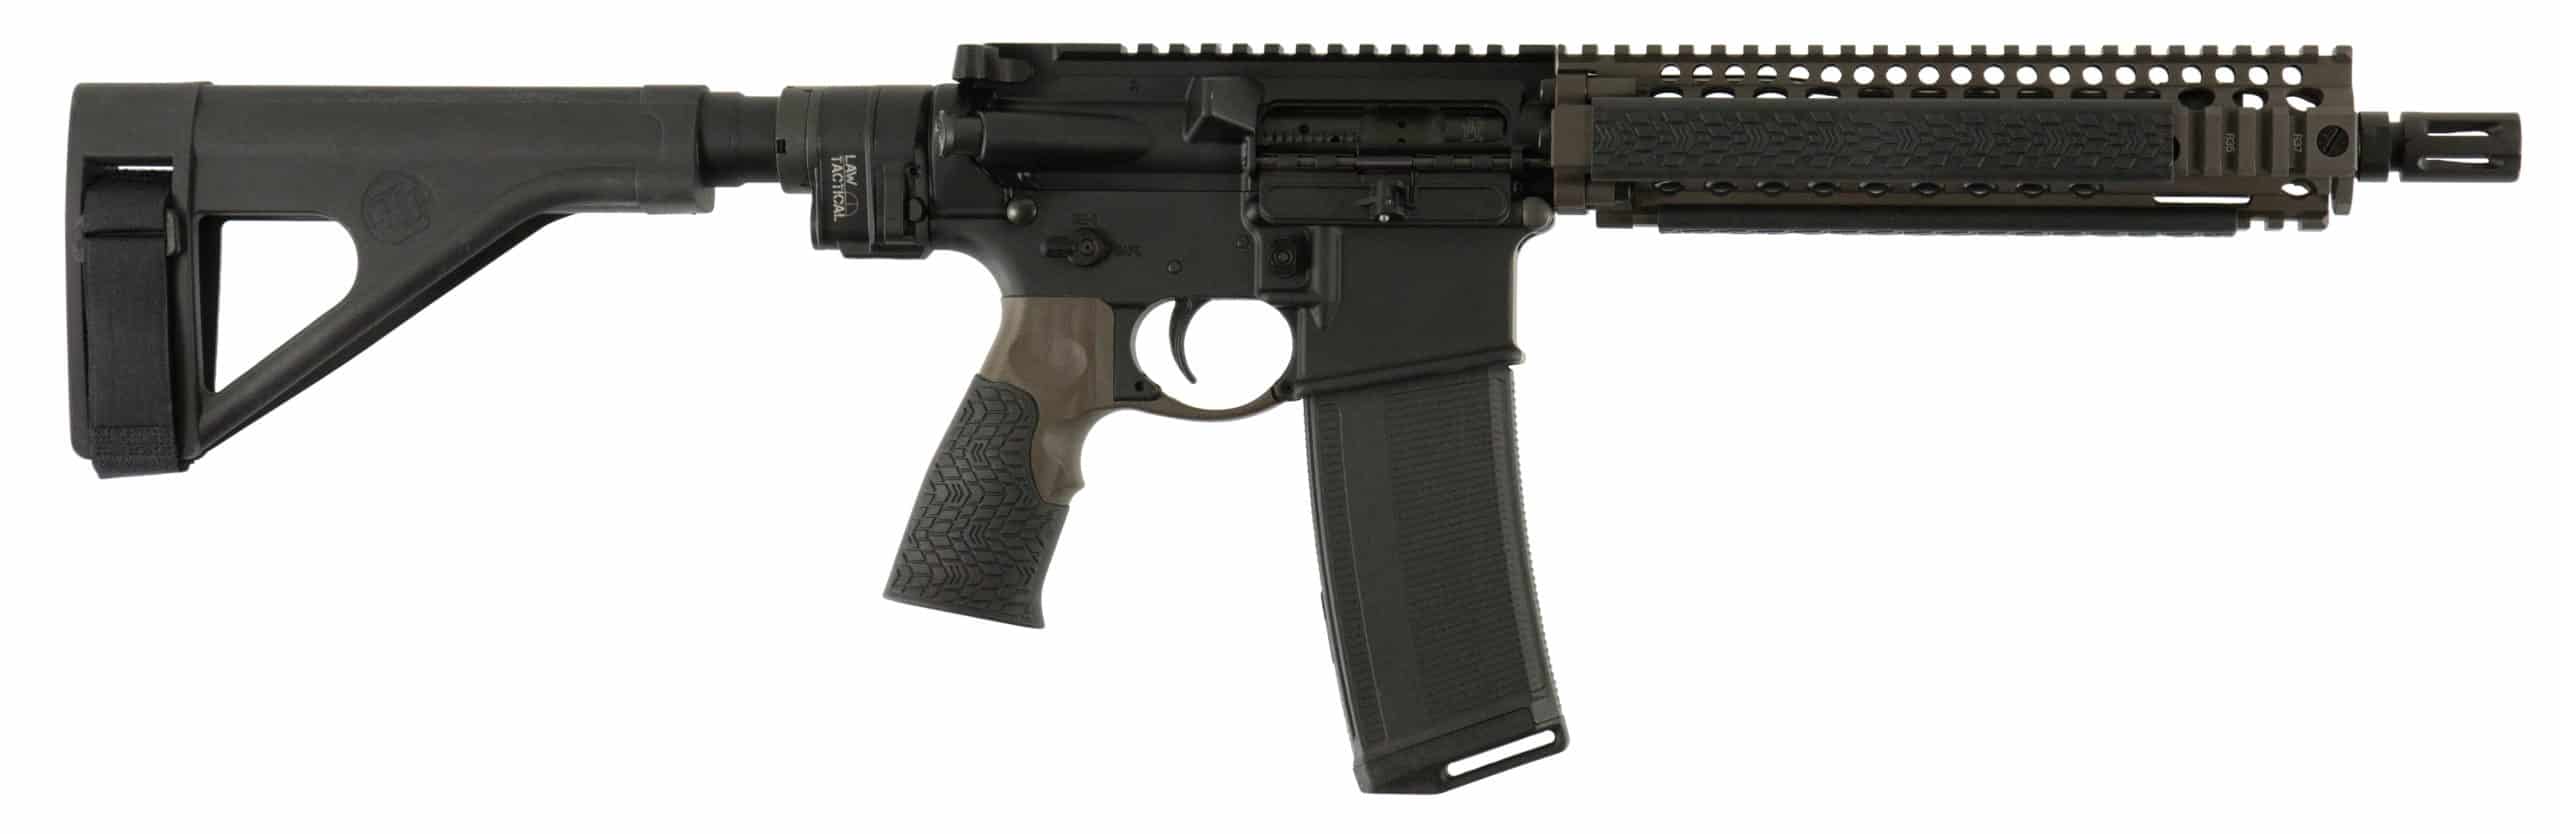 Daniel Defense MK18 LAW Tactical Folding Brace 5.56mm Pistol, (1)-30Rd ...